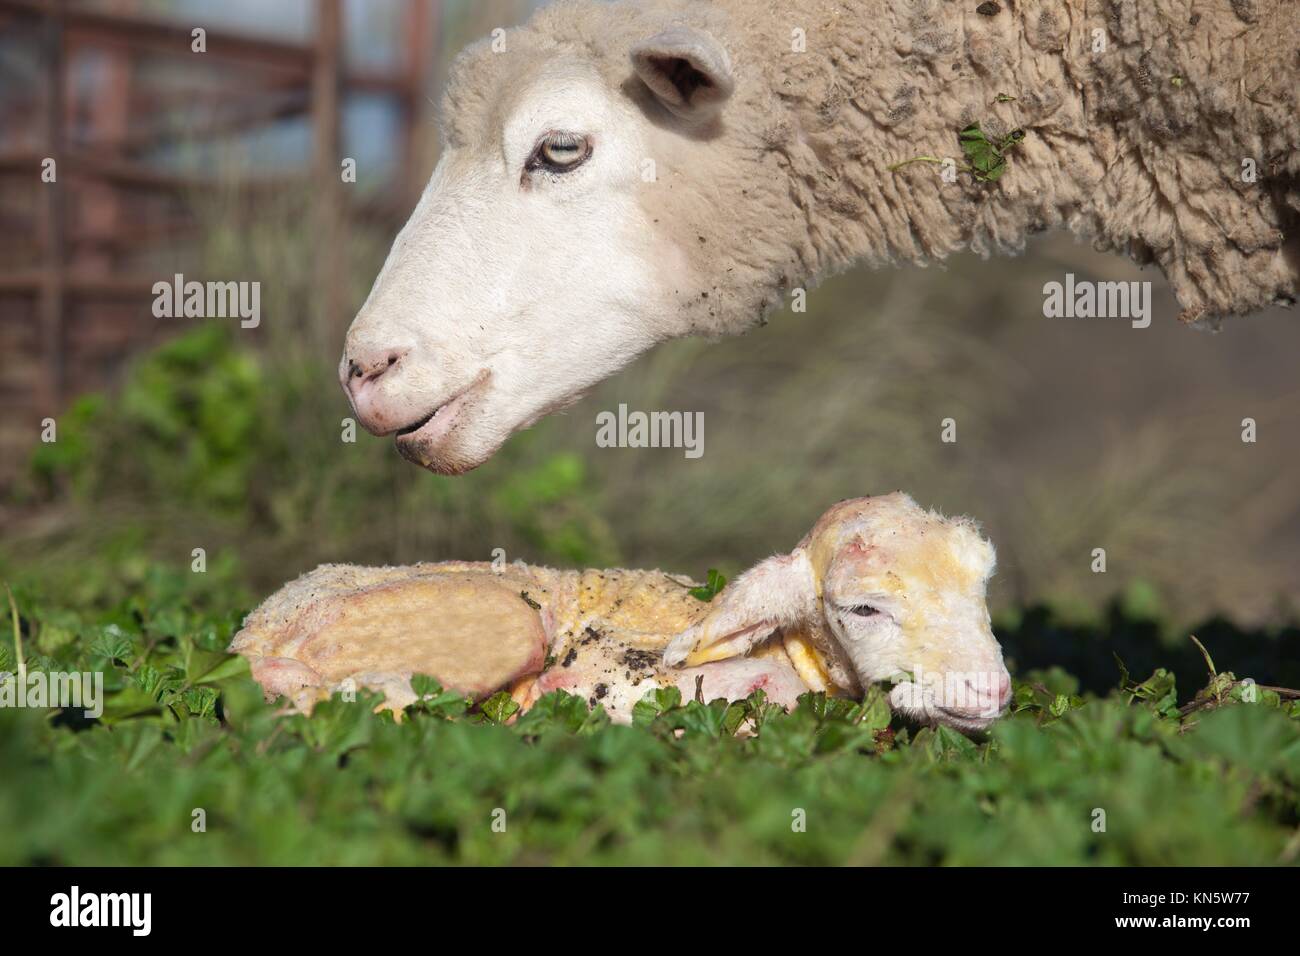 Cordero lechal y su maternal ovejas madre justo después del nacimiento, Extremadura, España. Foto de stock